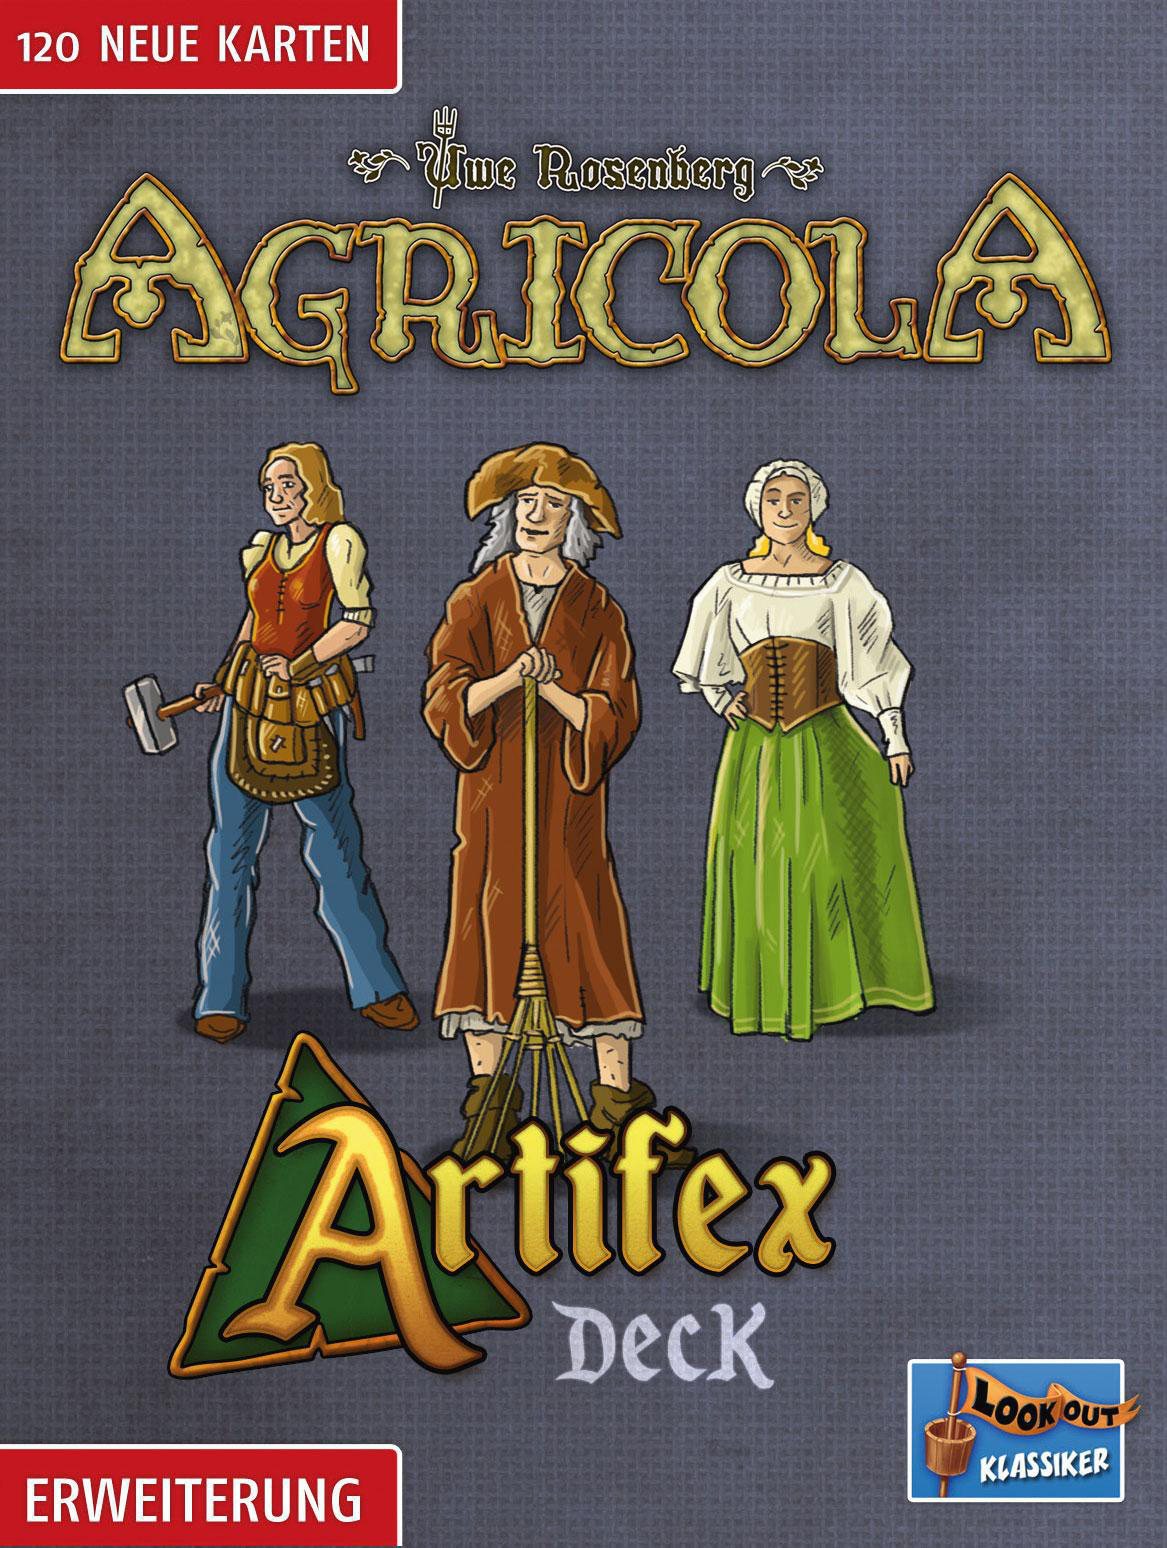 - LOOKOUT Artifex Agricola Deck Mehrfarbig Gesellschaftsspiel